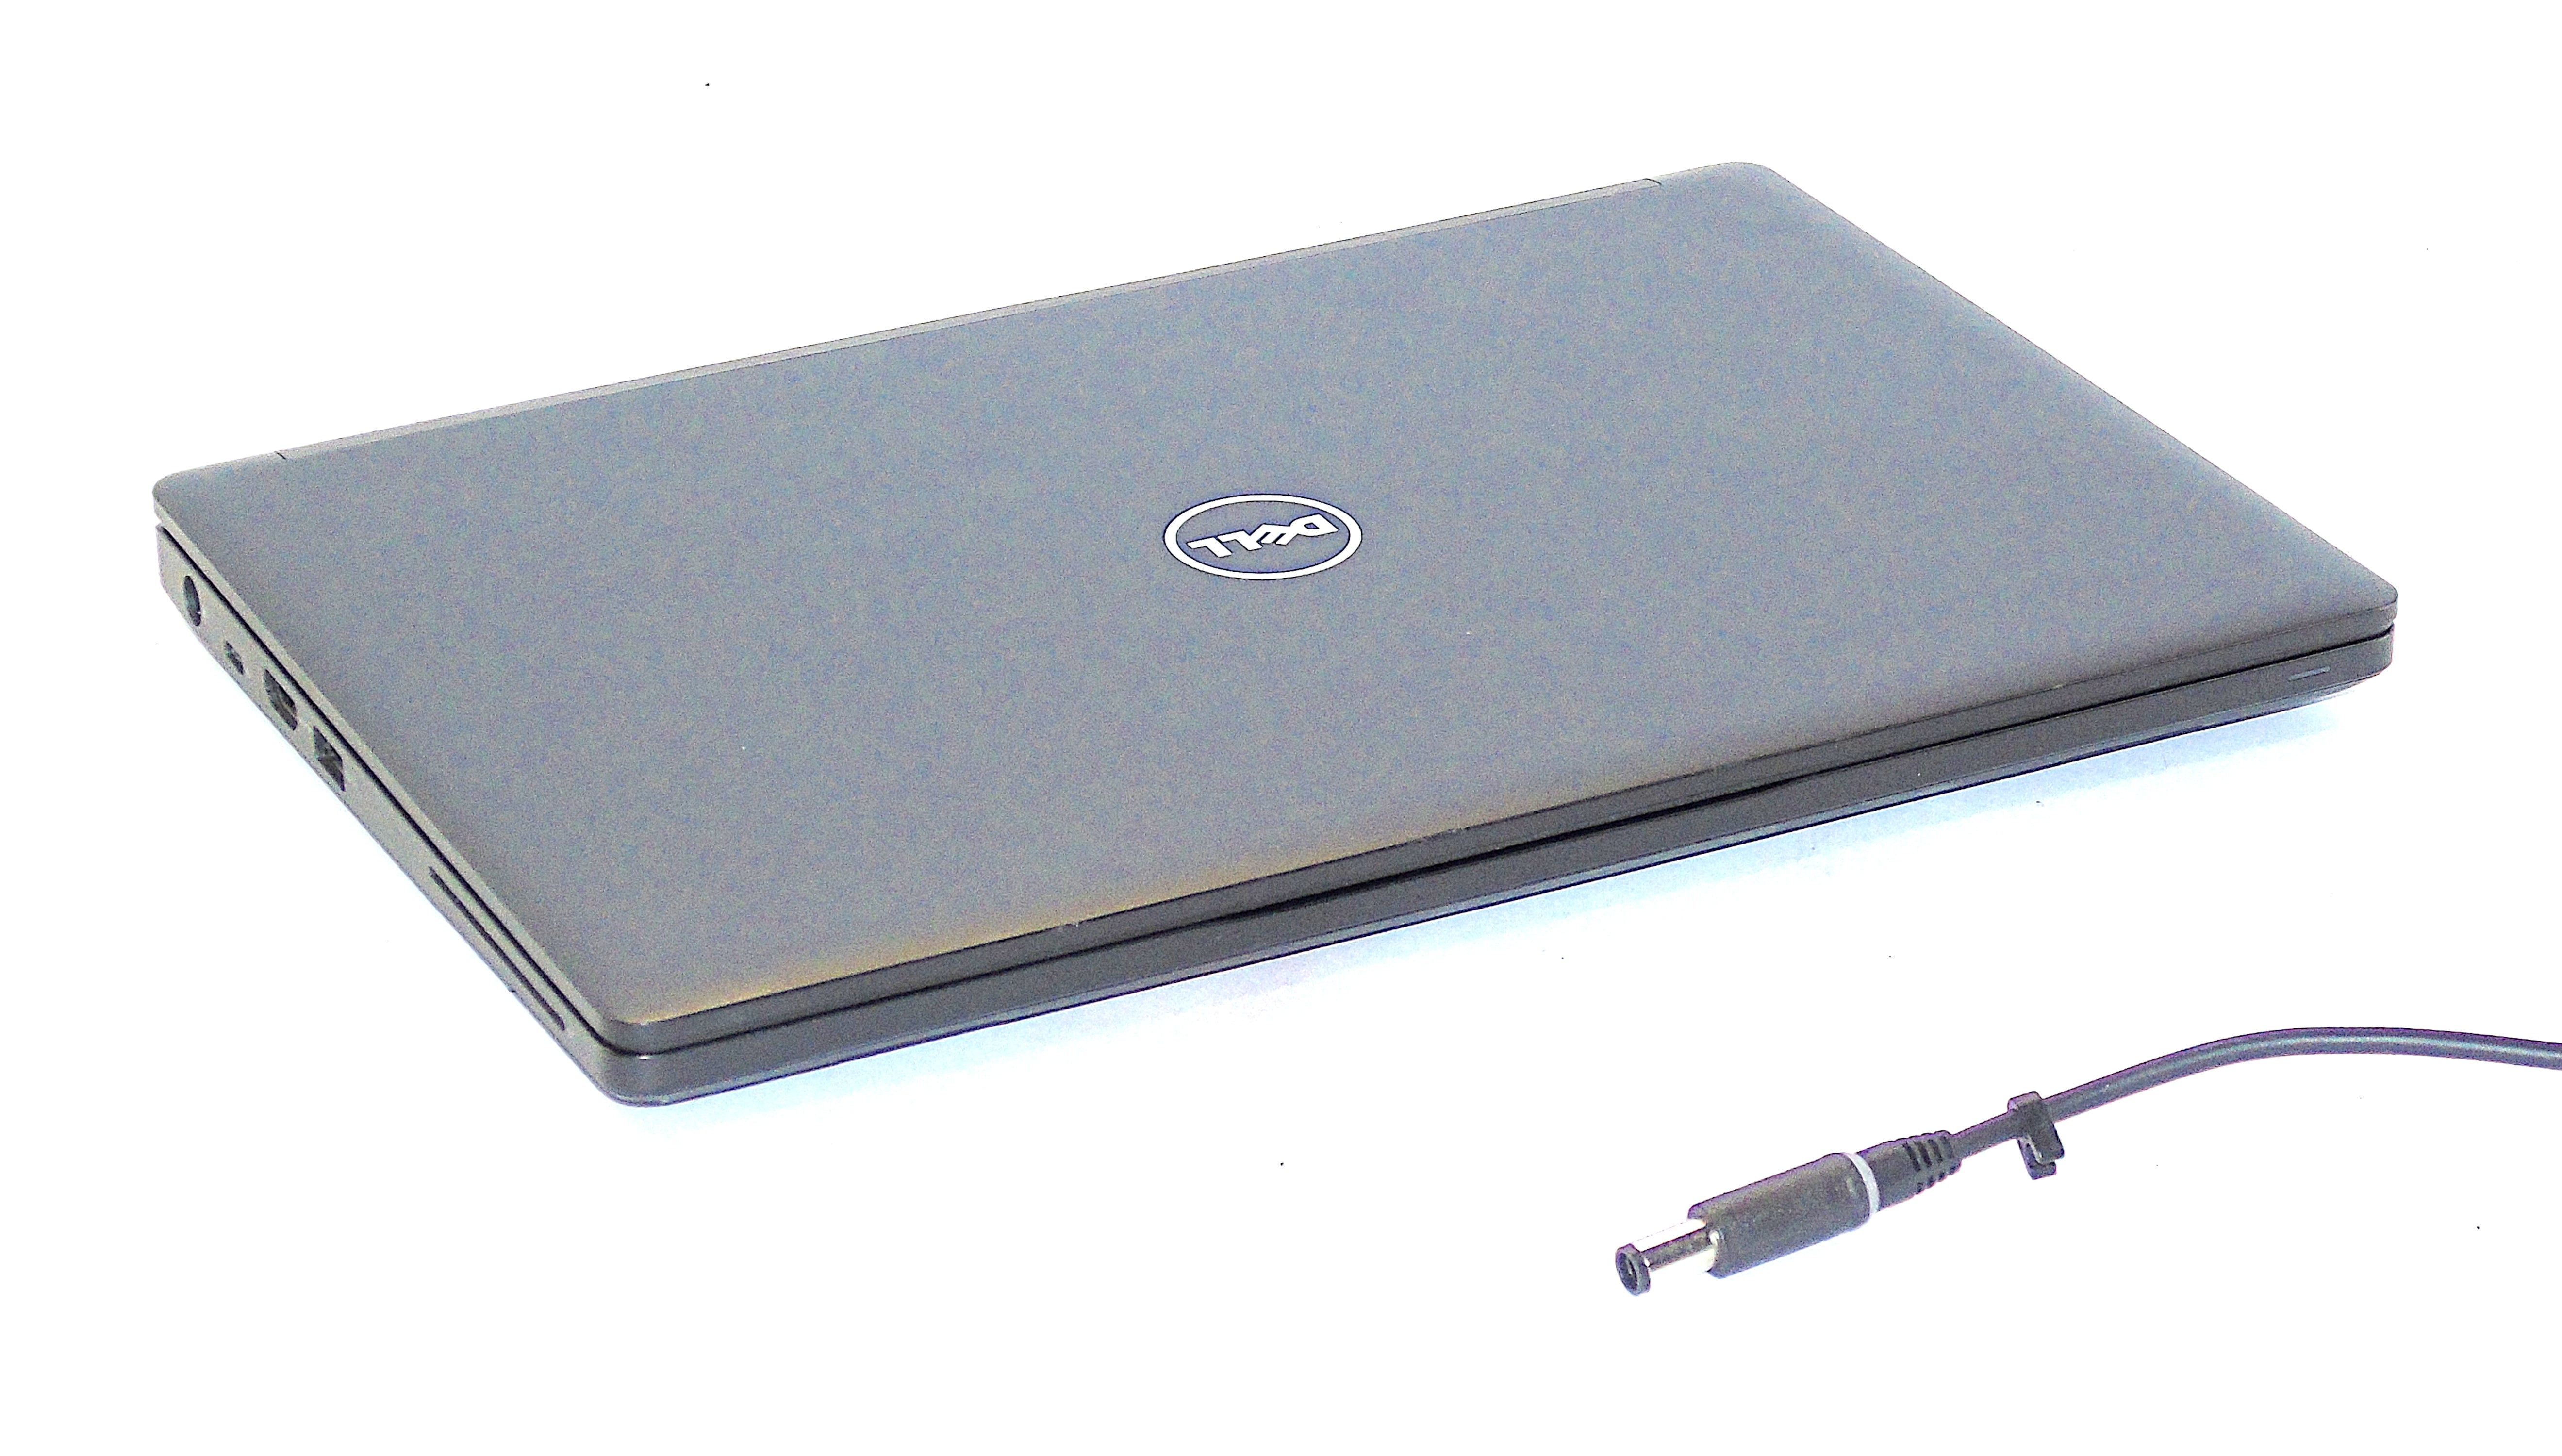 Dell Latitude 5280 Laptop, 12.5" Core i7 7th Gen, 8GB RAM, 256GB SSD